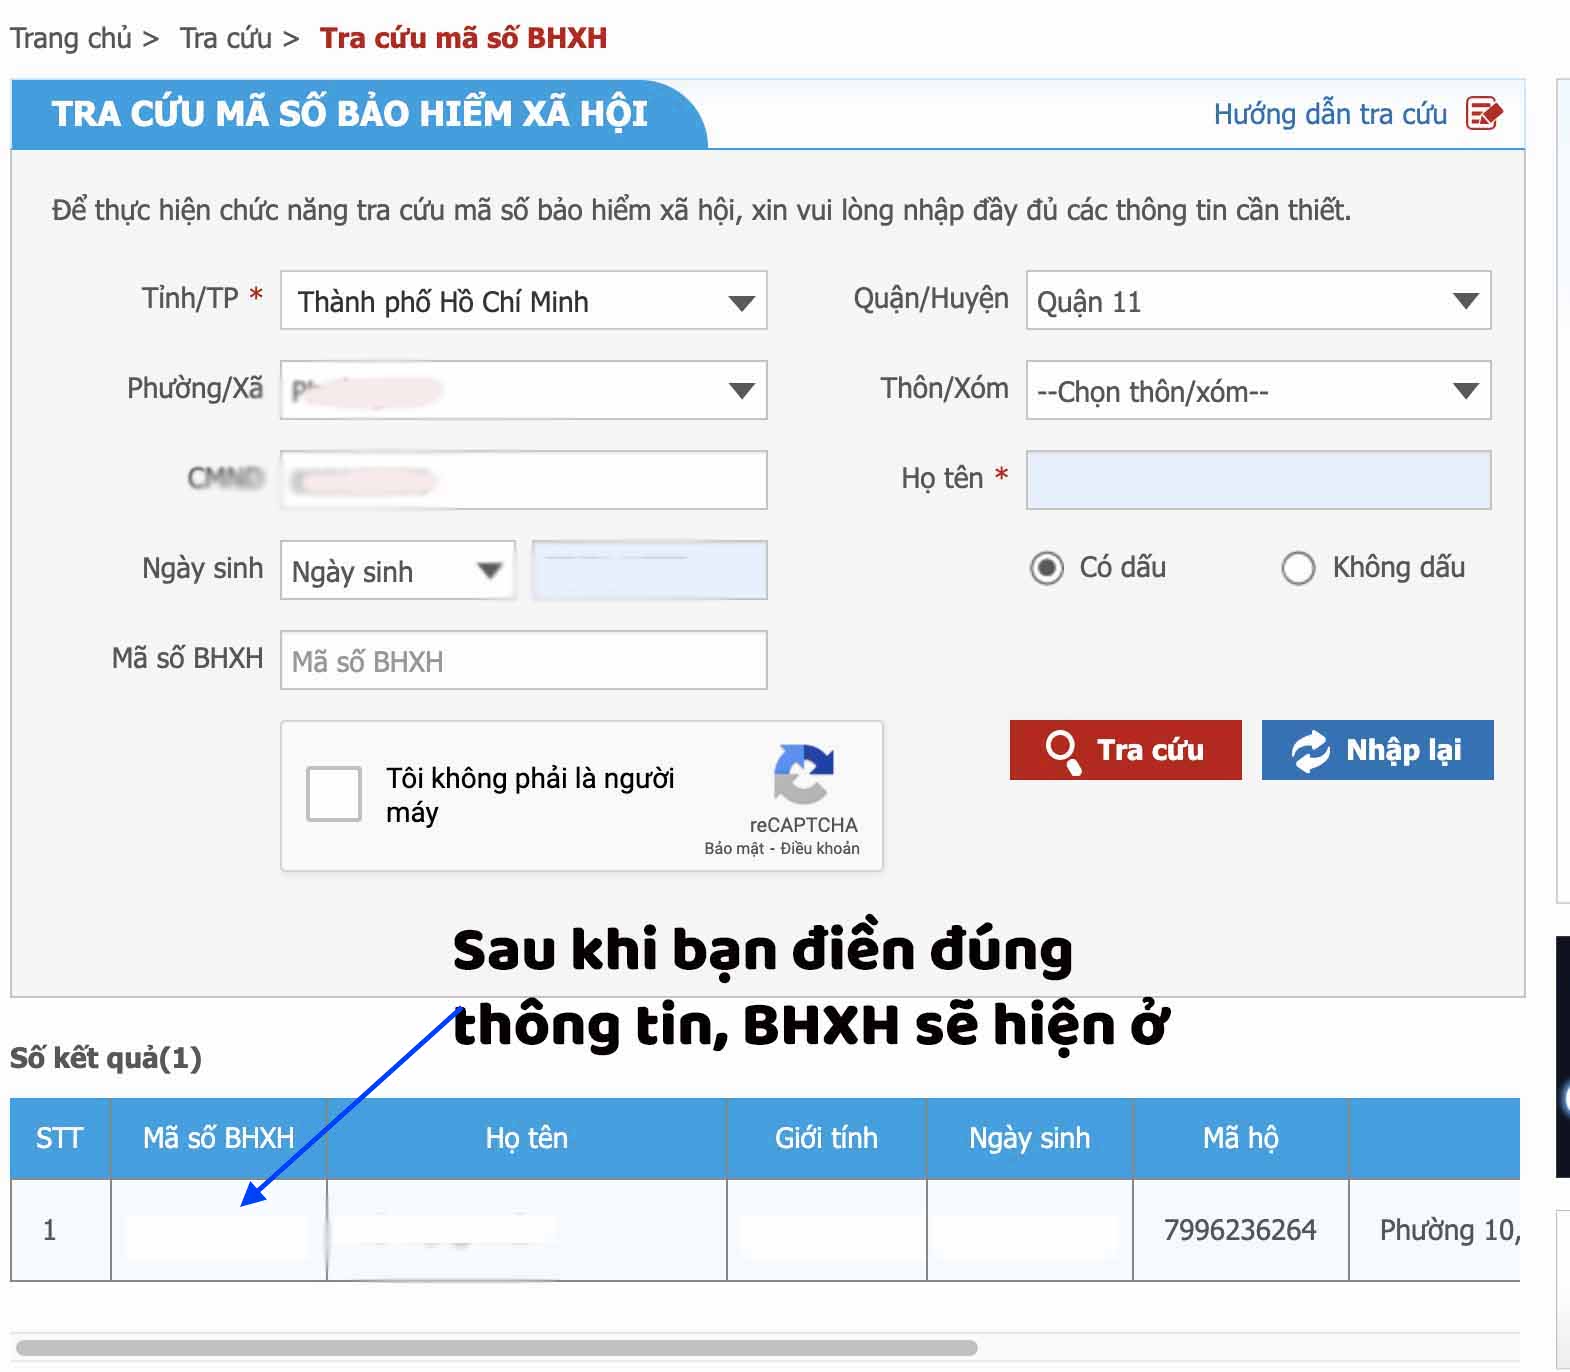 Giao diện sau khi điền xong thông tin, số BHXH của bạn nằm ở góc trái bên dưới baohiemxahoi.gov.vn